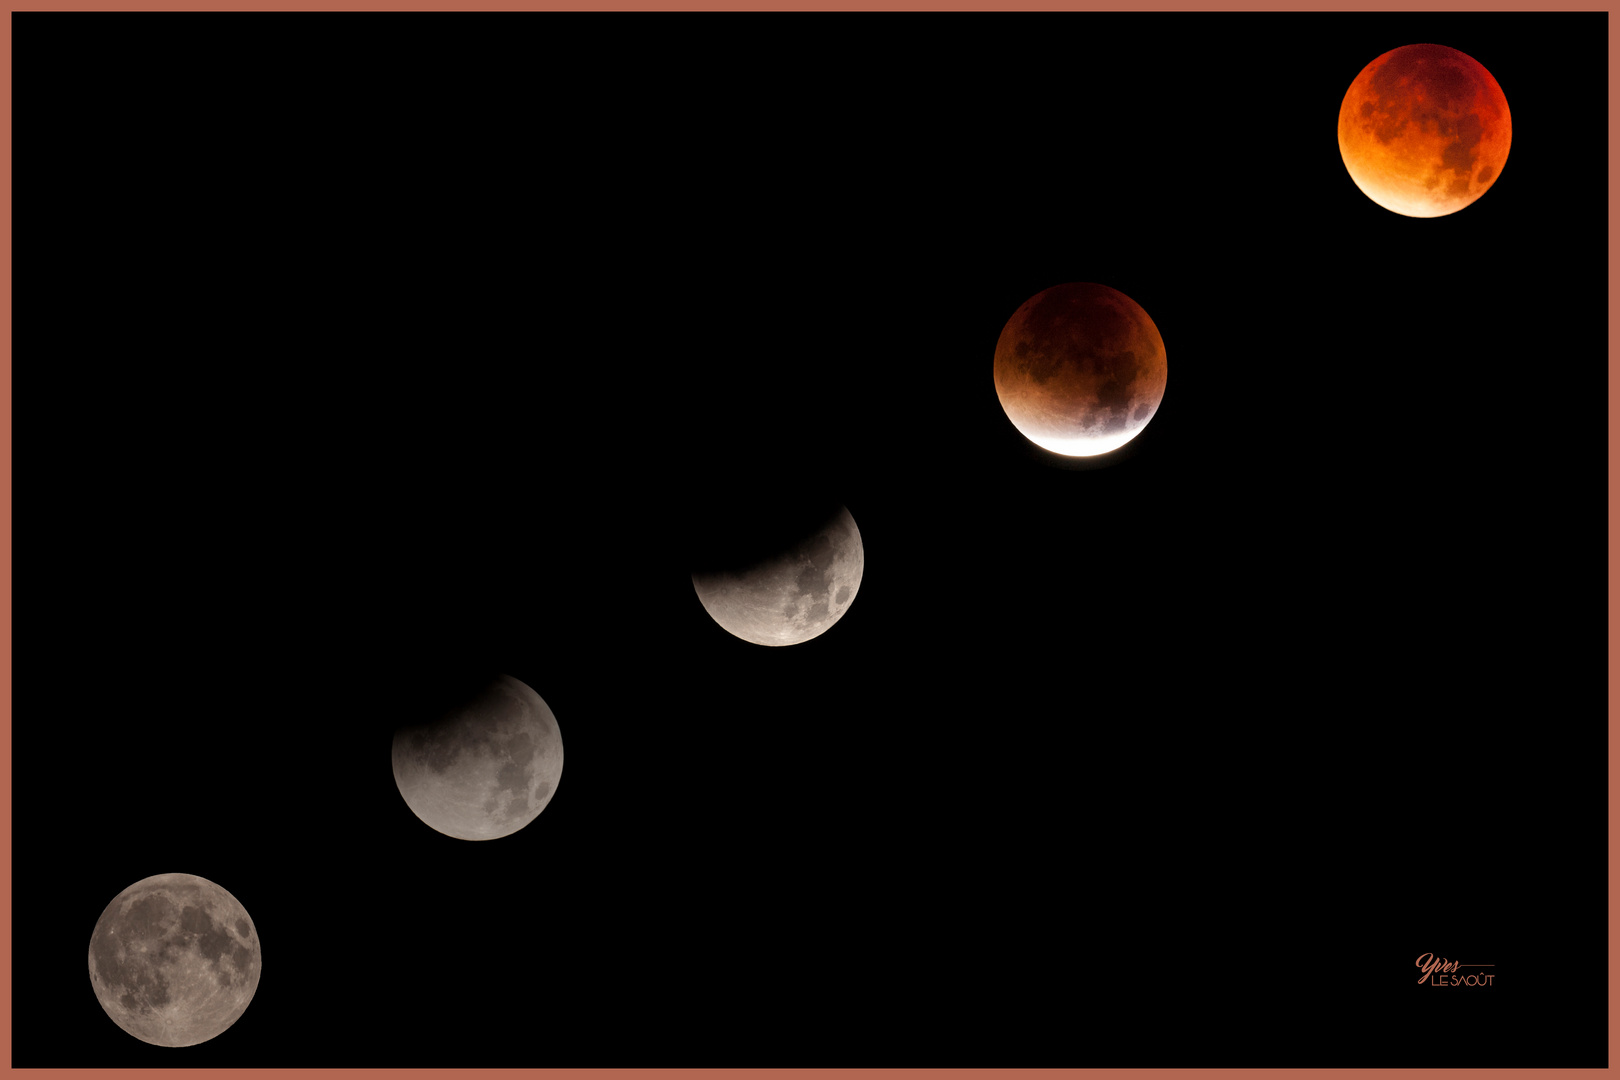 Eclipse de lune du 28 septembre 2015